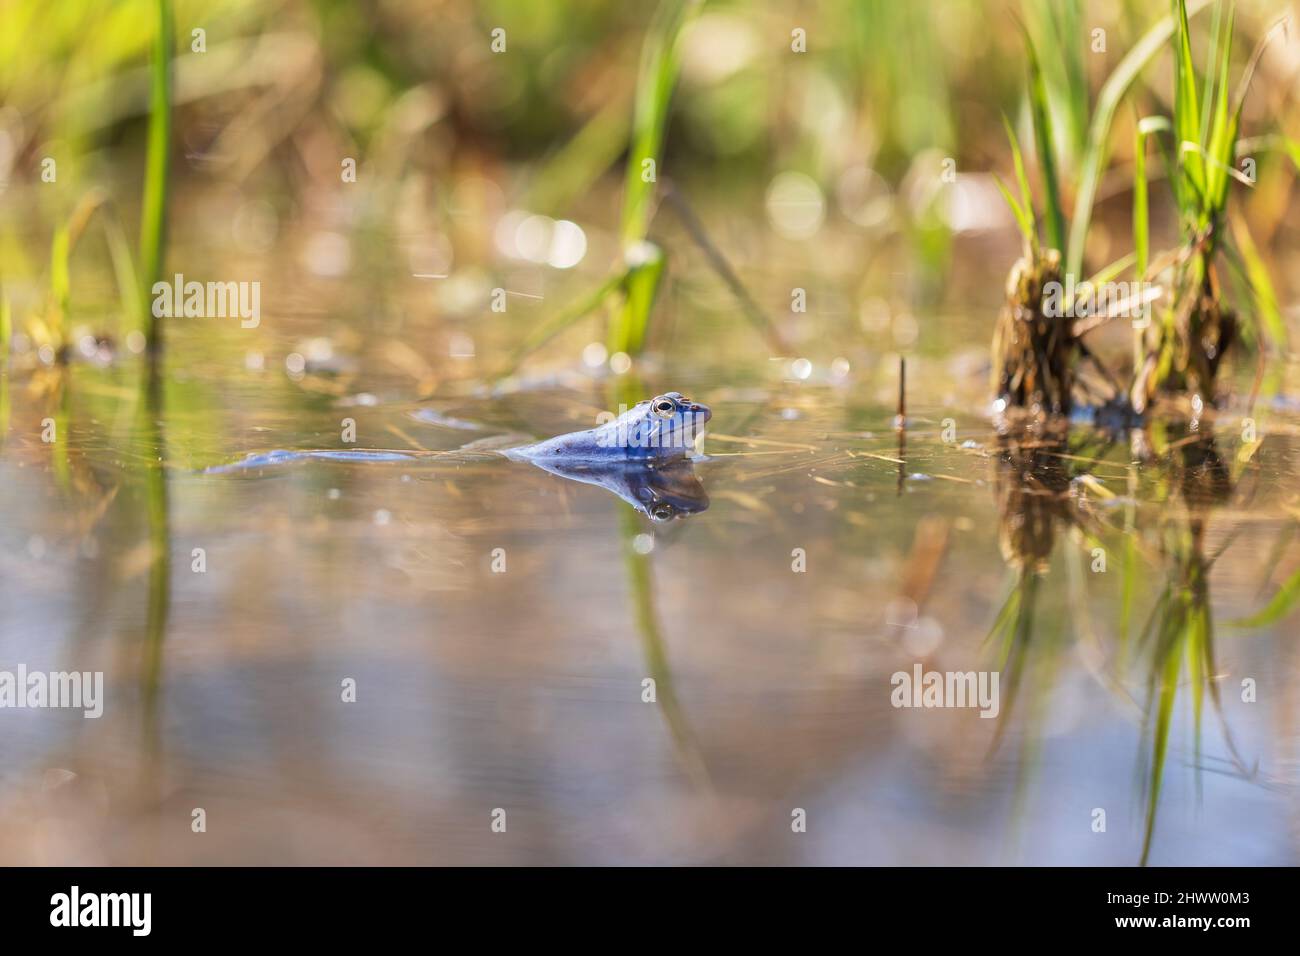 Grenouille bleue - Rana arvalis dans l'eau au moment de l'accouplement. Photo sauvage de la nature. La photo a un joli bokeh. Banque D'Images